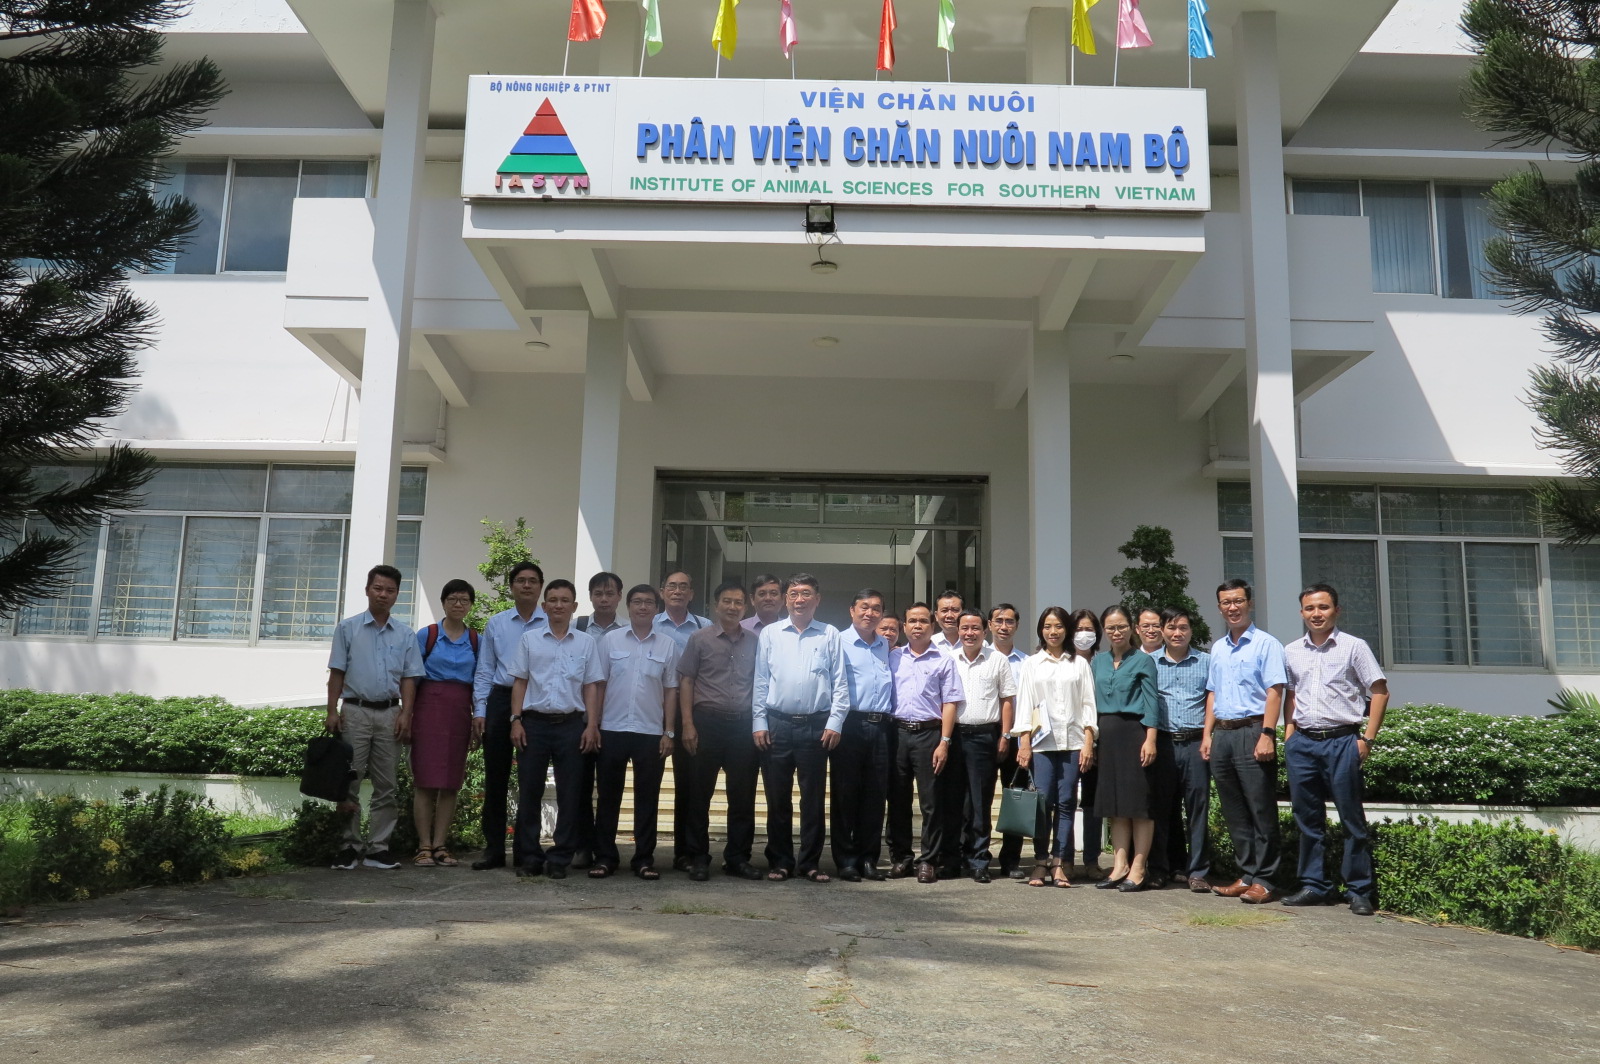 Hợp tác Nghiên cứu và ứng dụng Khoa học Công nghệ giữa Sở Nông nghiệp và PTNT TP. Hồ Chí Minh và Phân viện Chăn nuôi Nam Bộ